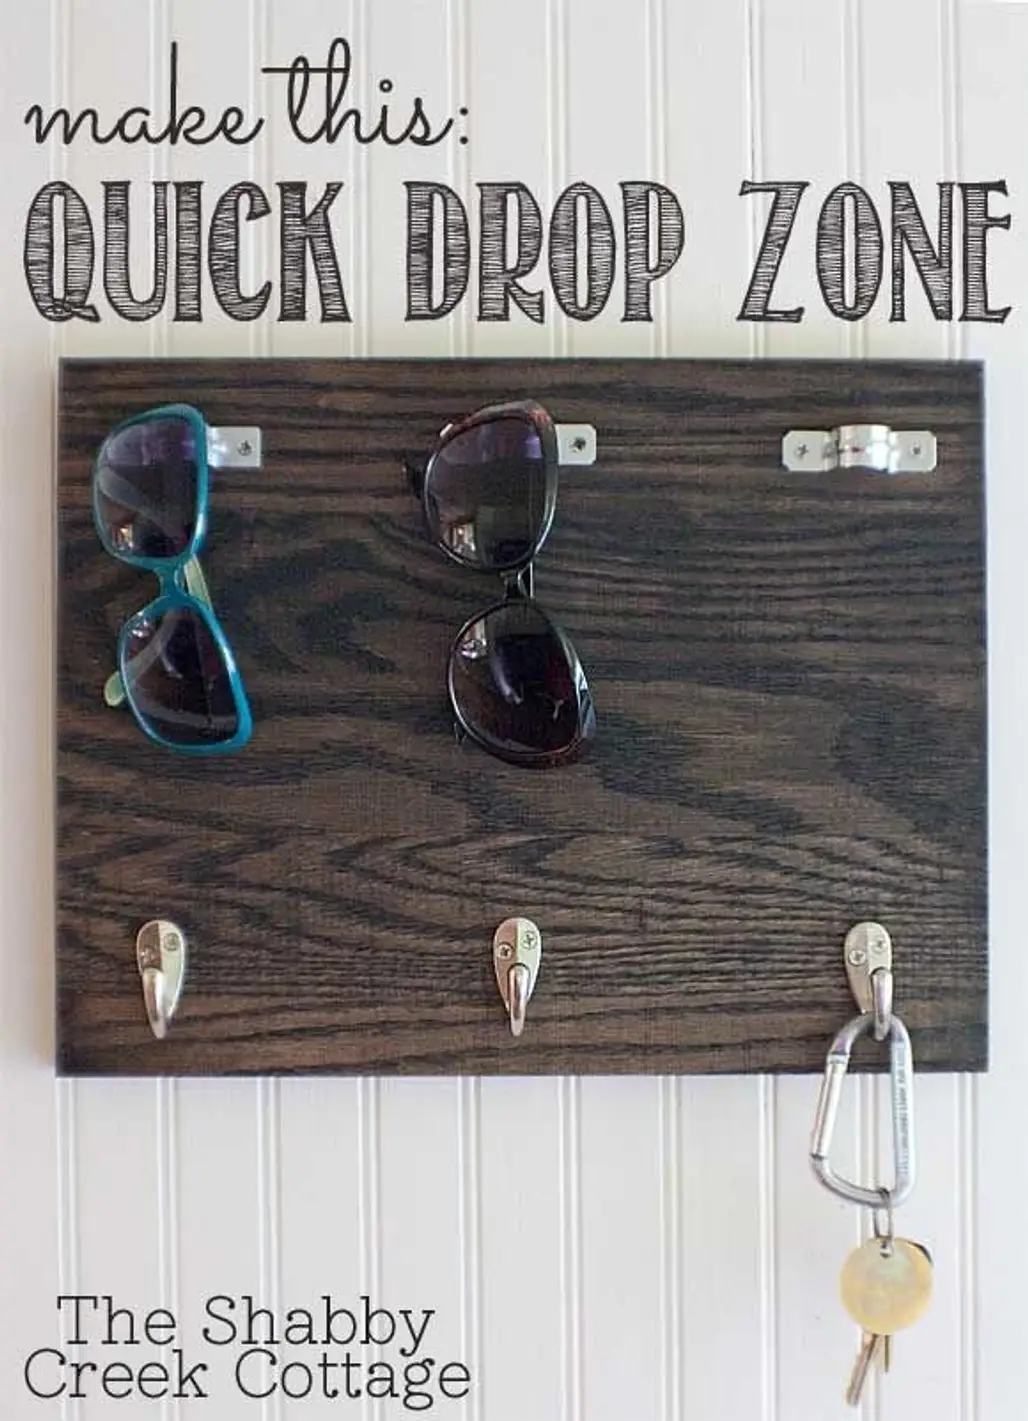 Quick Drop Zone